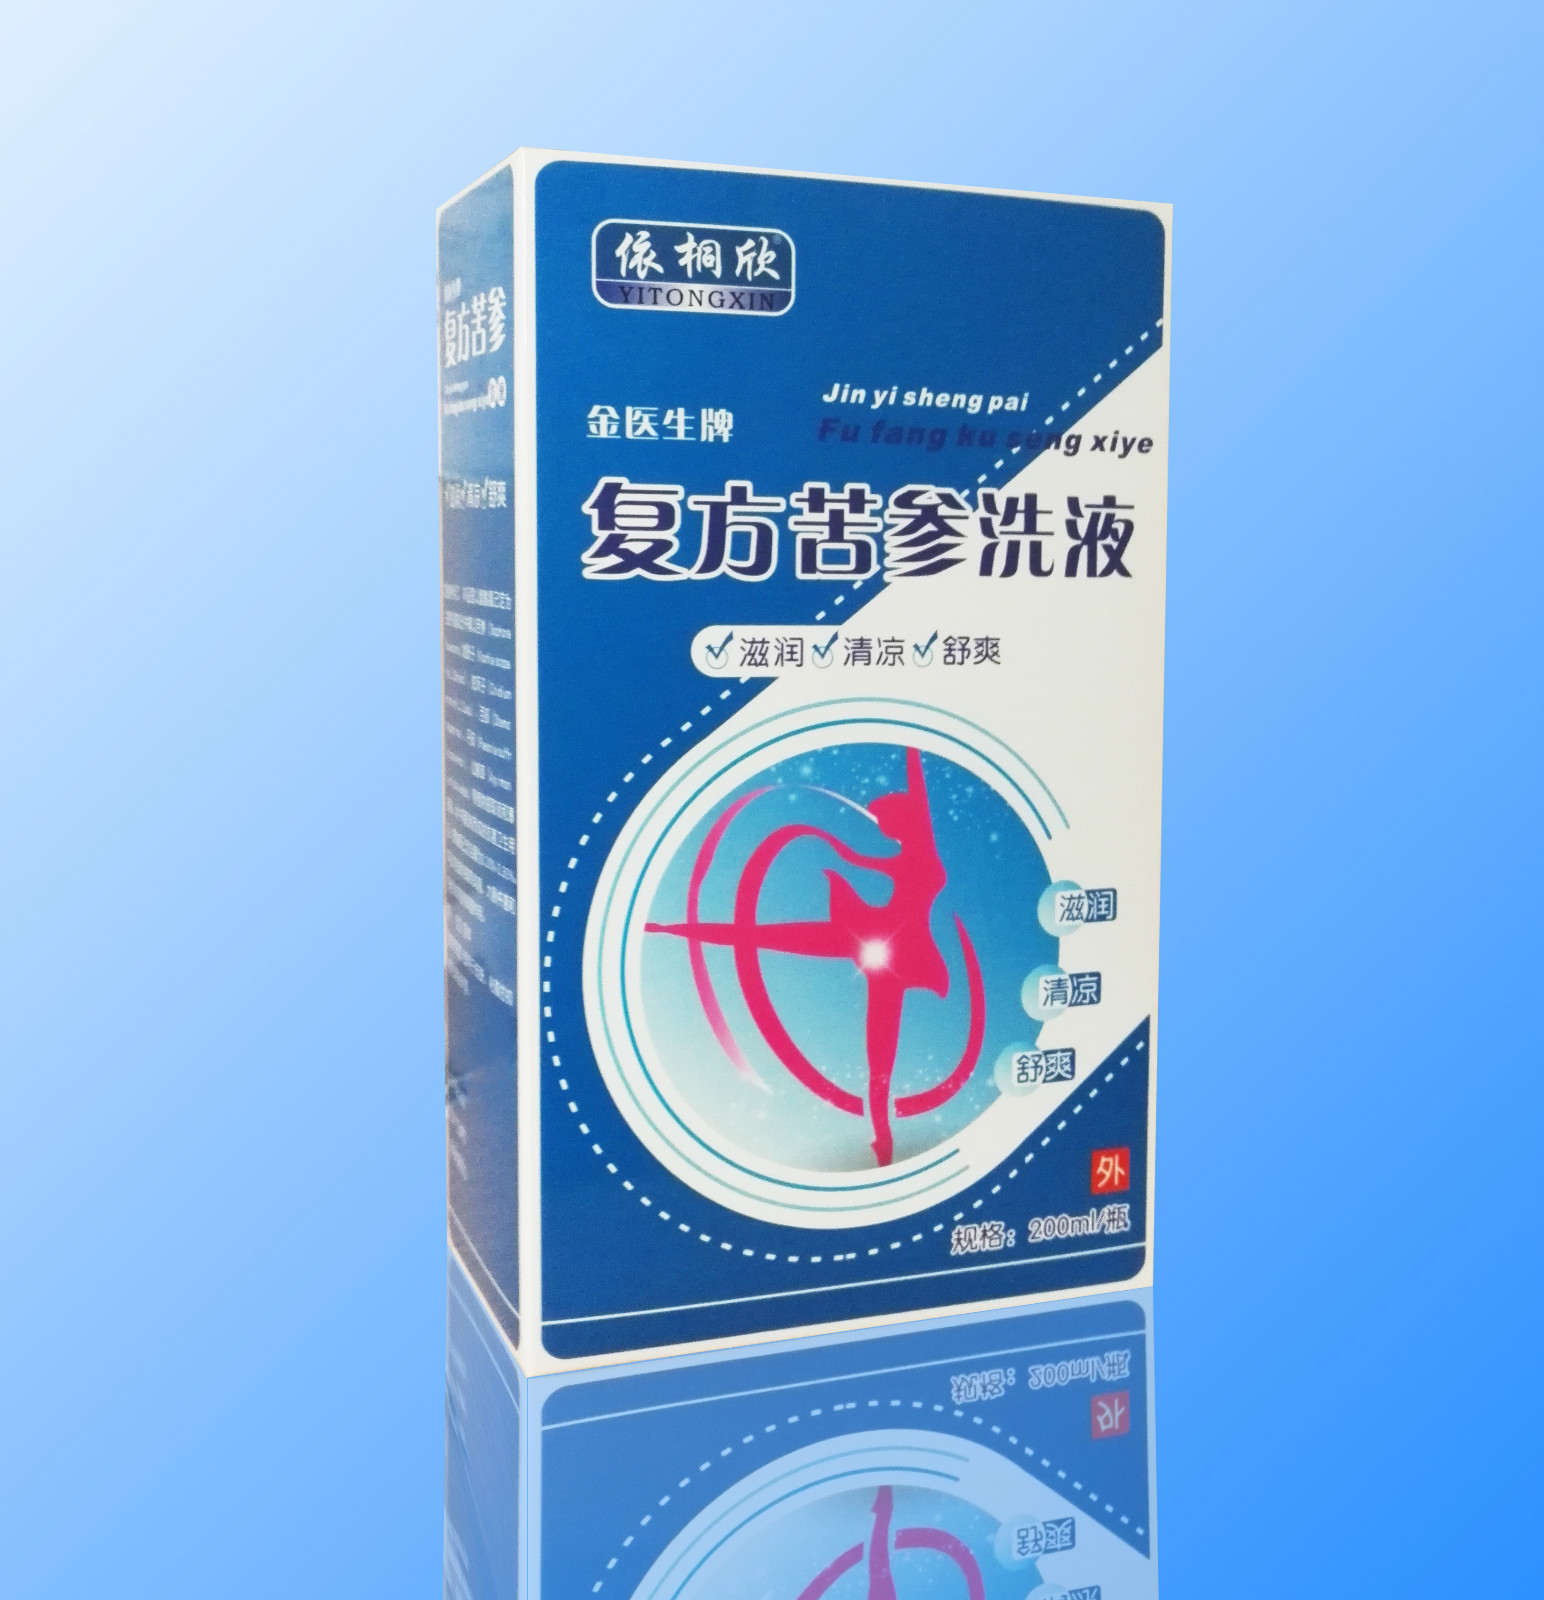 上海市皮肤病医院推出多款特色制剂，物美价廉还能“云上”配药